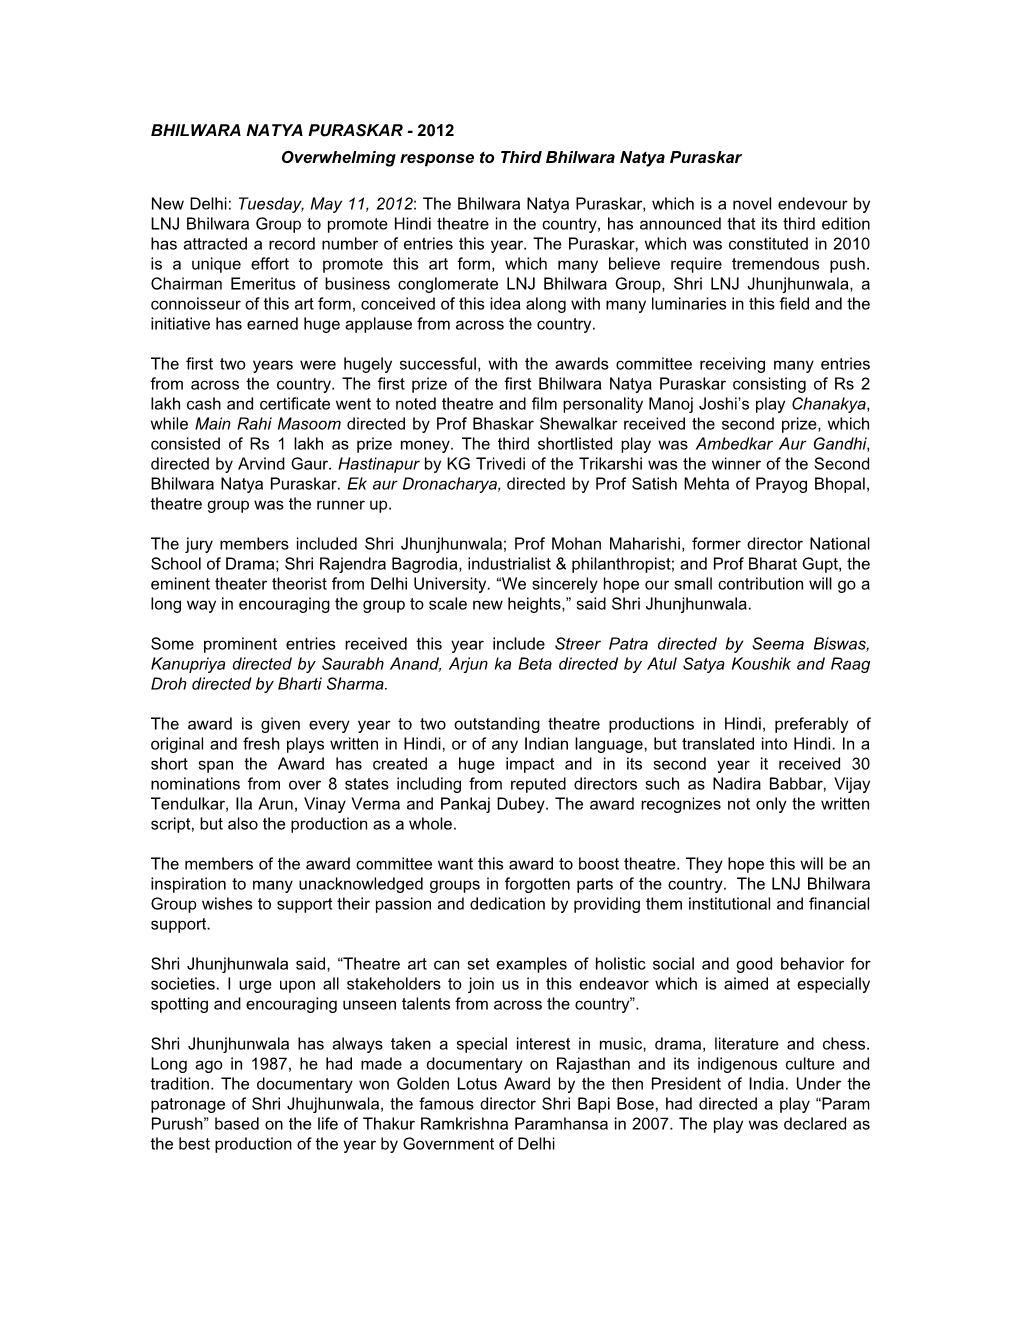 BHILWARA NATYA PURASKAR - 2012 Overwhelming Response to Third Bhilwara Natya Puraskar